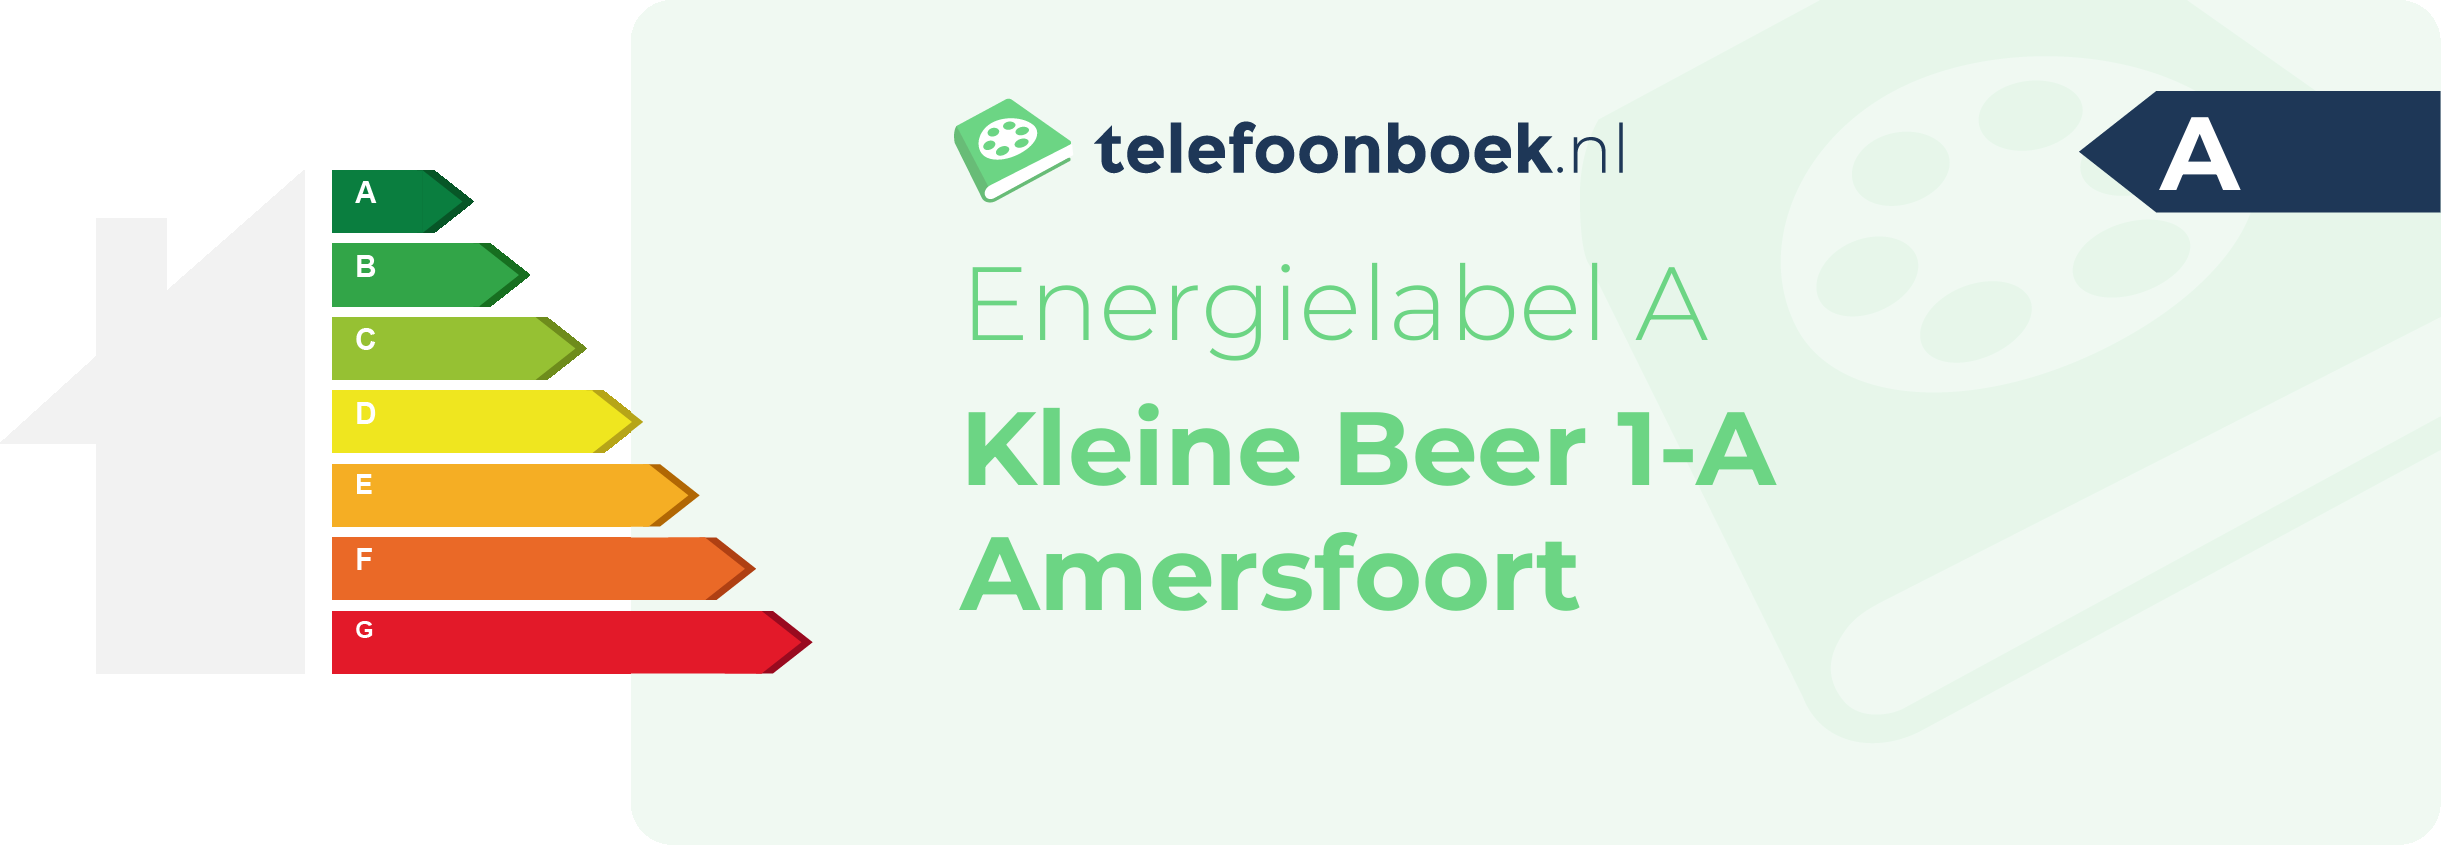 Energielabel Kleine Beer 1-A Amersfoort